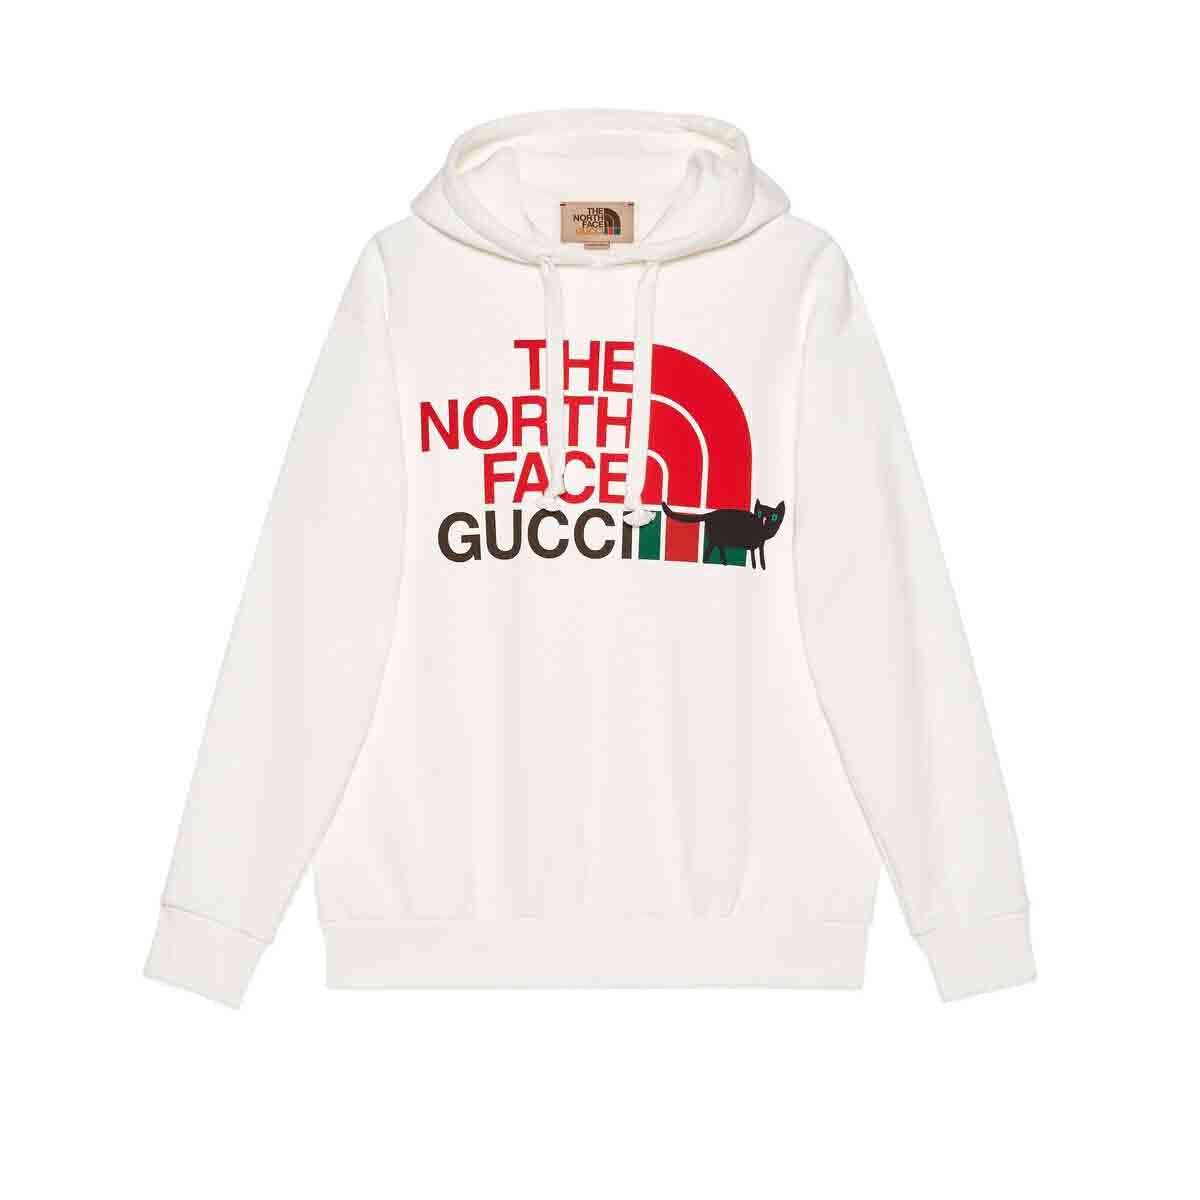 Gucci x The North Face Sweatshirt Black/Multicolor Men's - FW22 - US